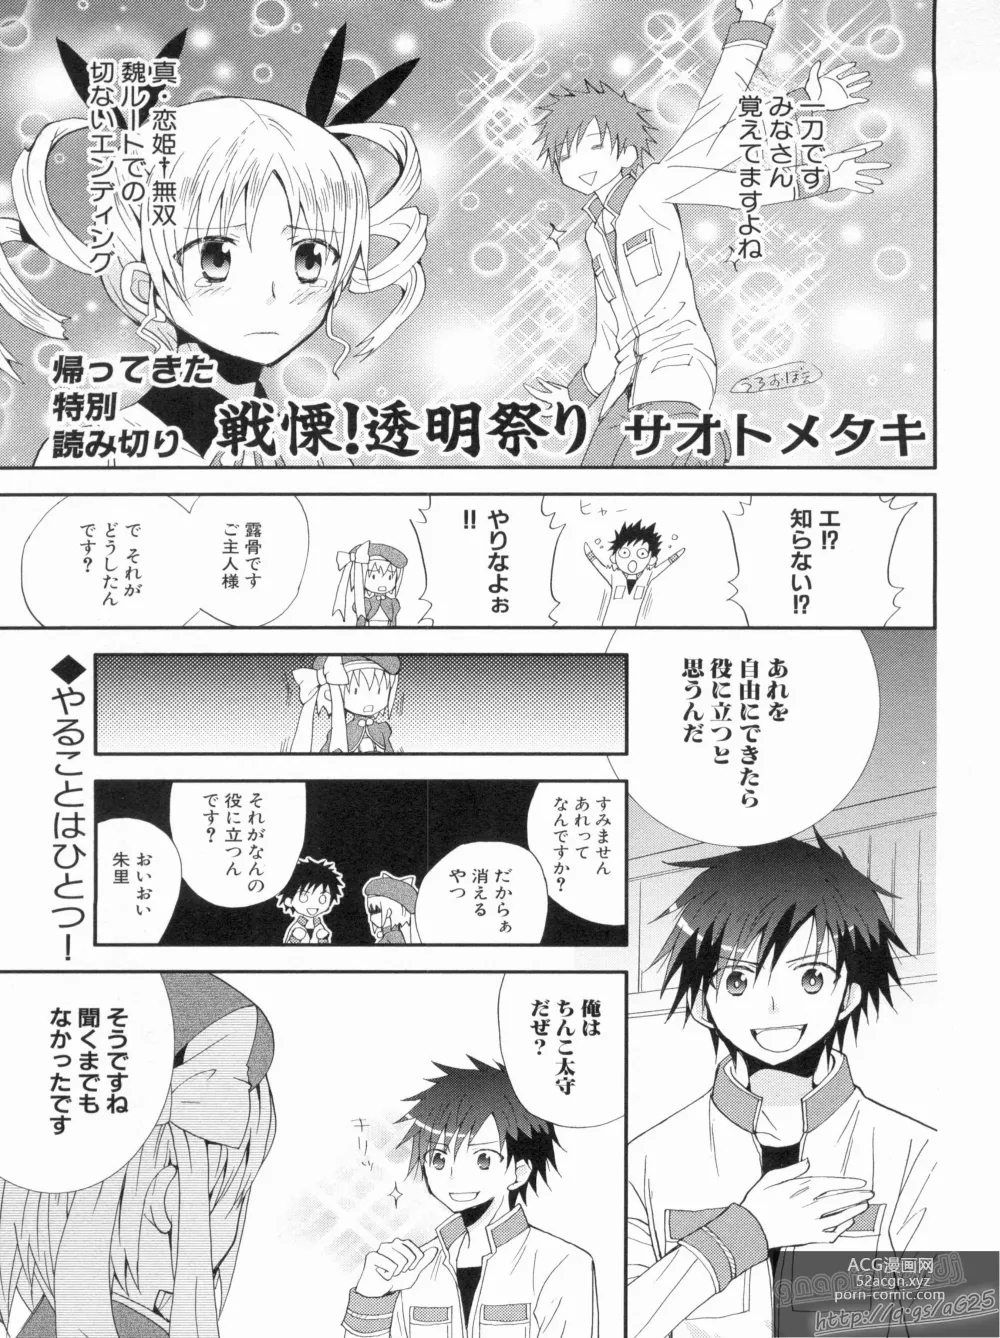 Page 151 of manga Shin Koihime Musou Gaishi Saiten VOL.2